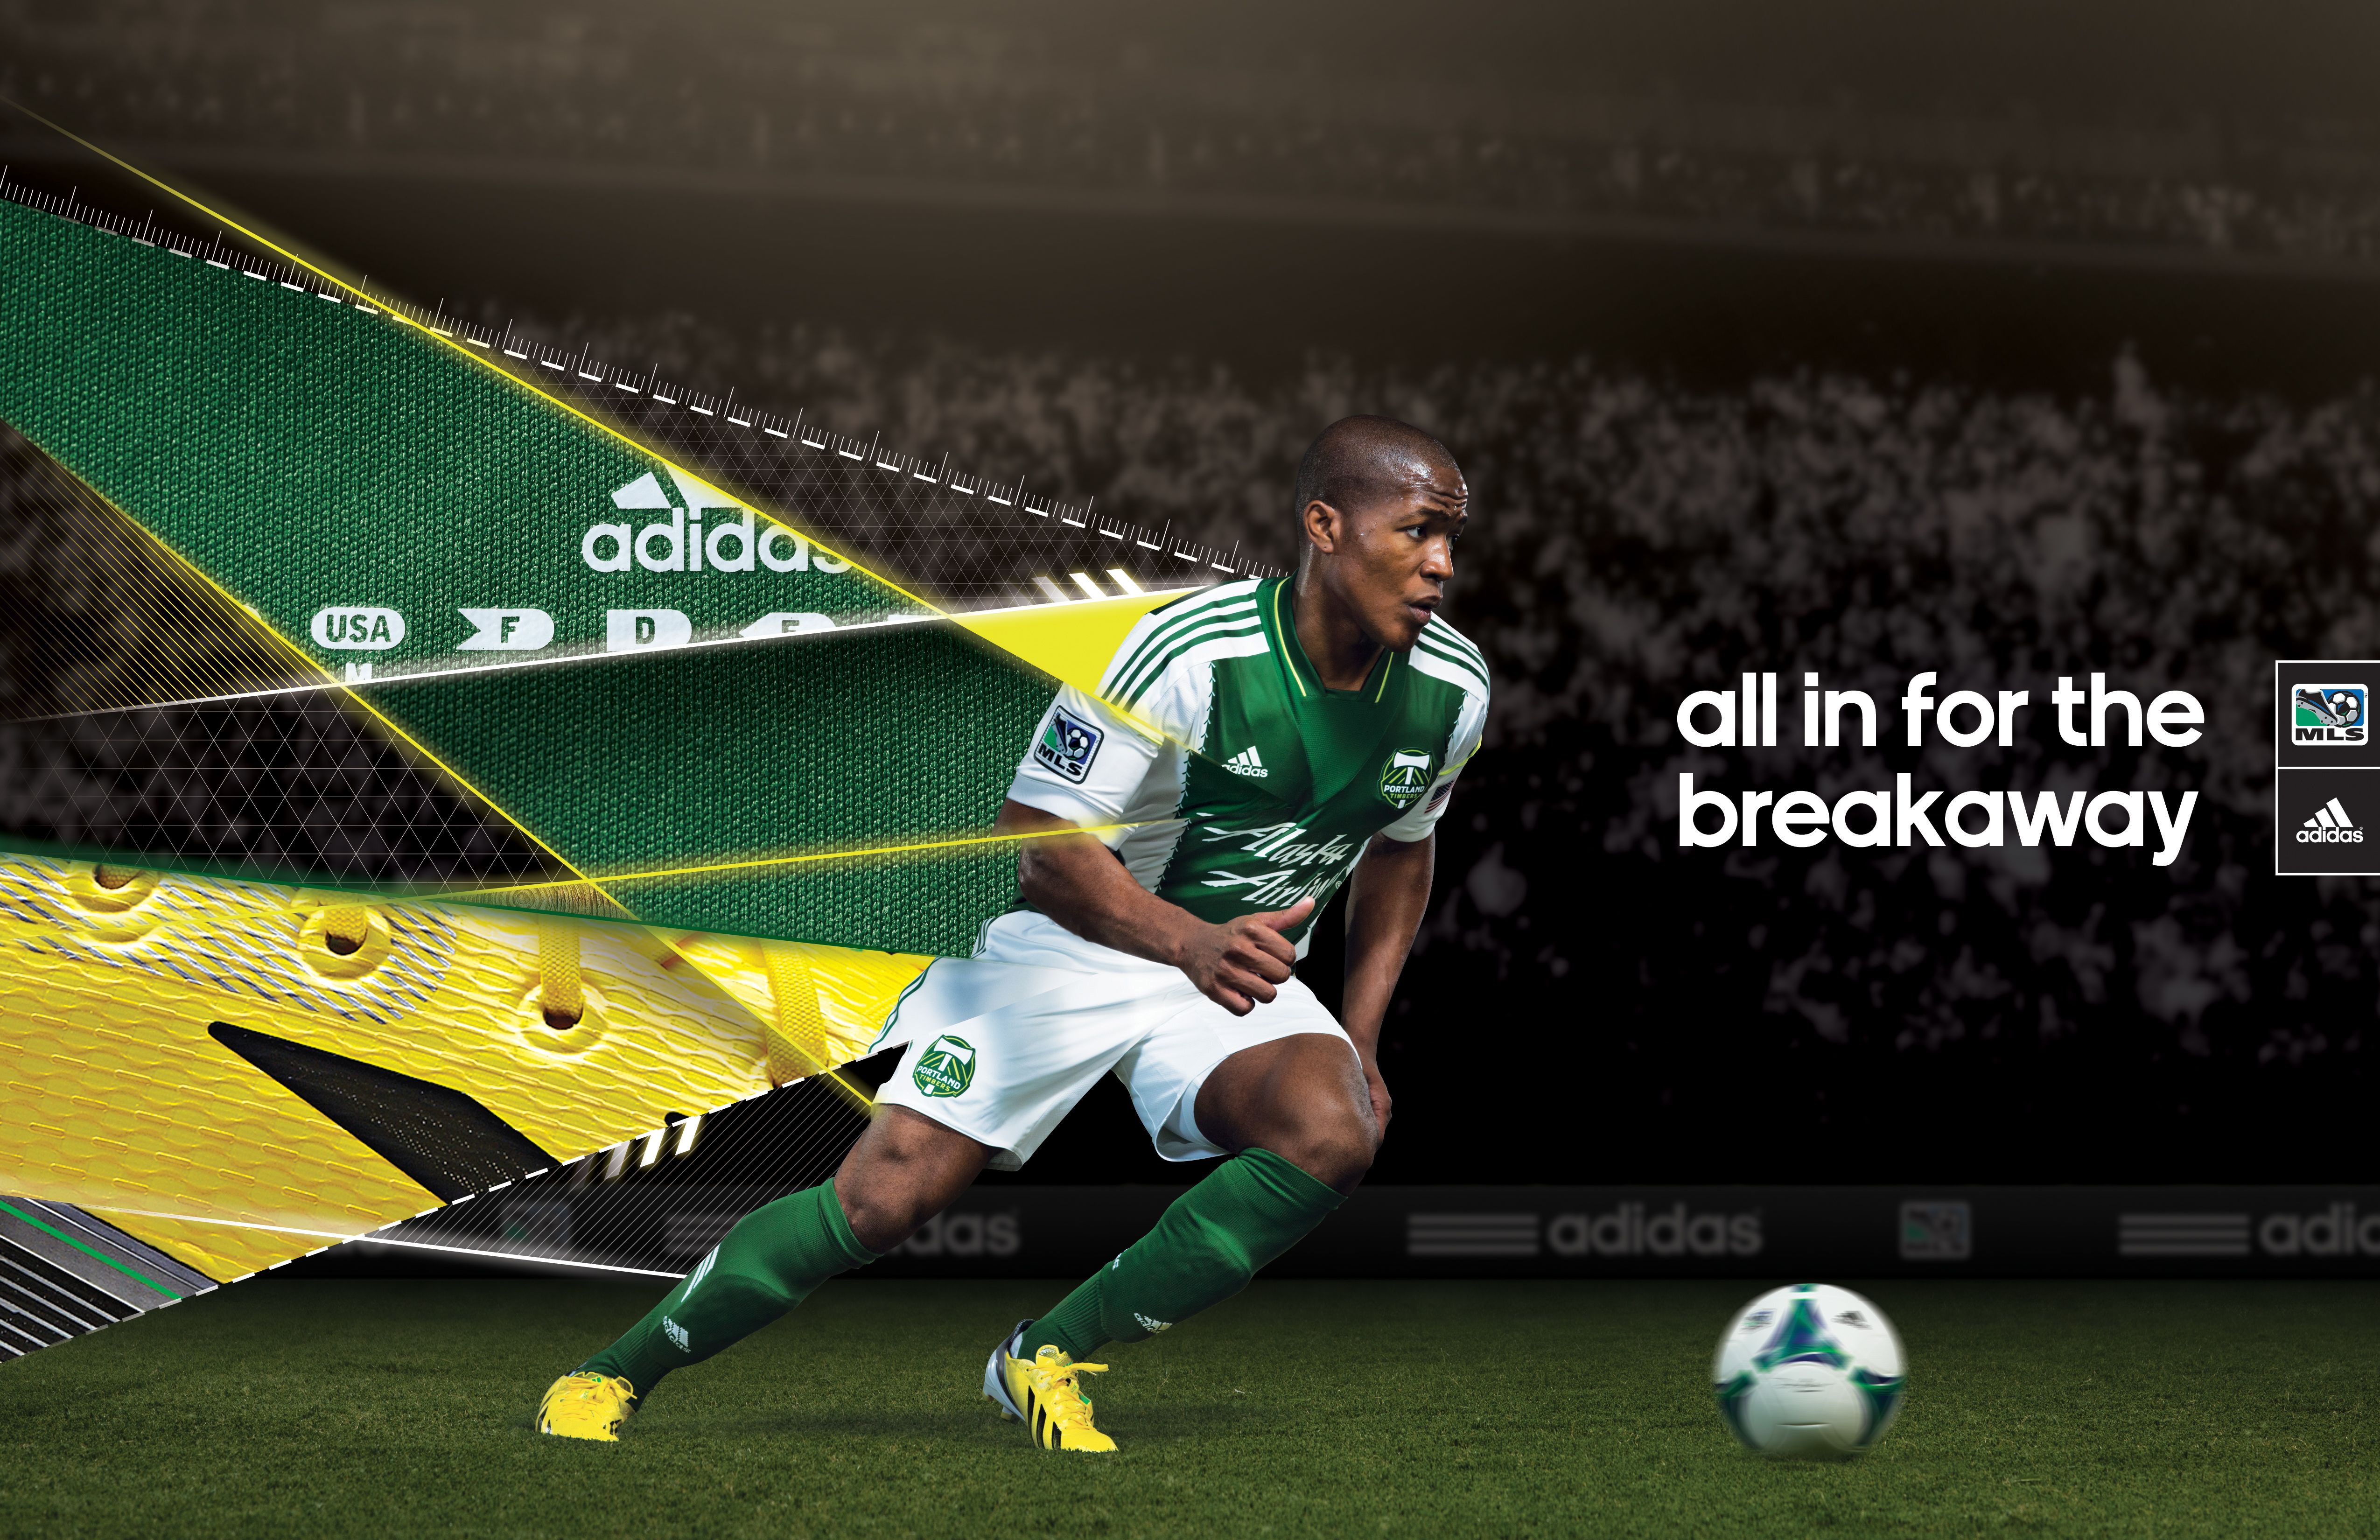 Adidas Soccer Print Ad 5100x3300 Wallpaper Teahub Io